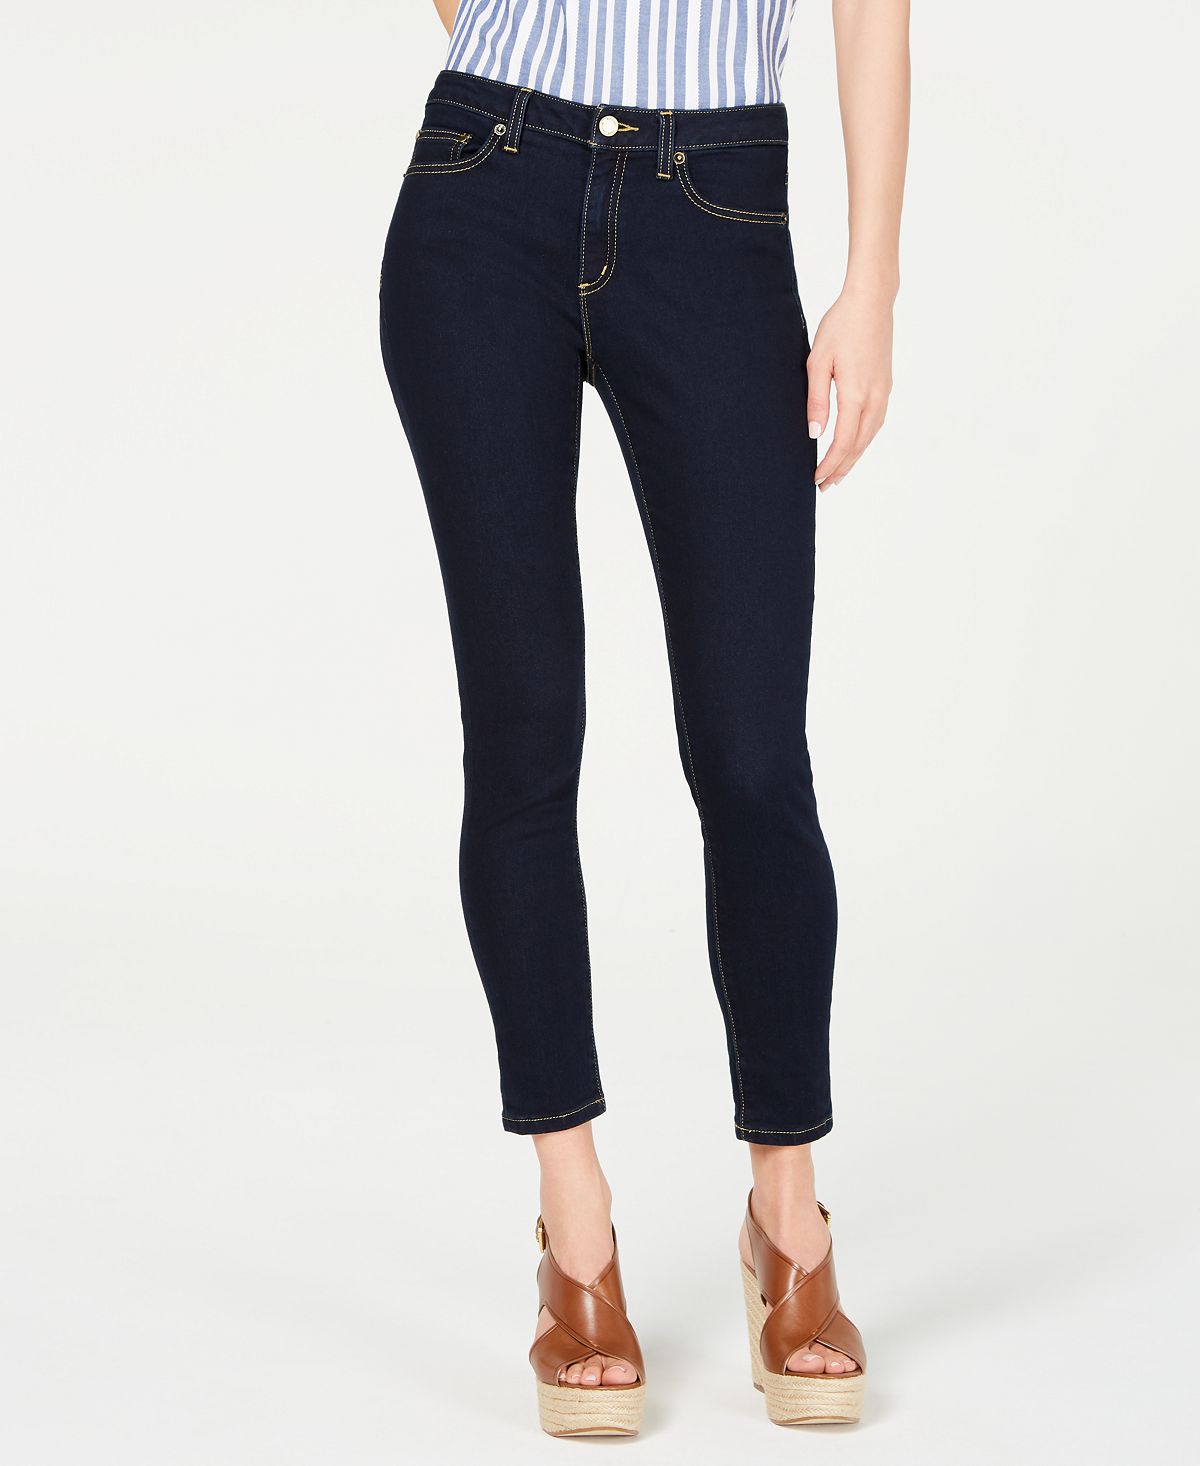 Женские джинсы-скинни стрейч с высокой посадкой обычных и миниатюрных размеров Michael Kors